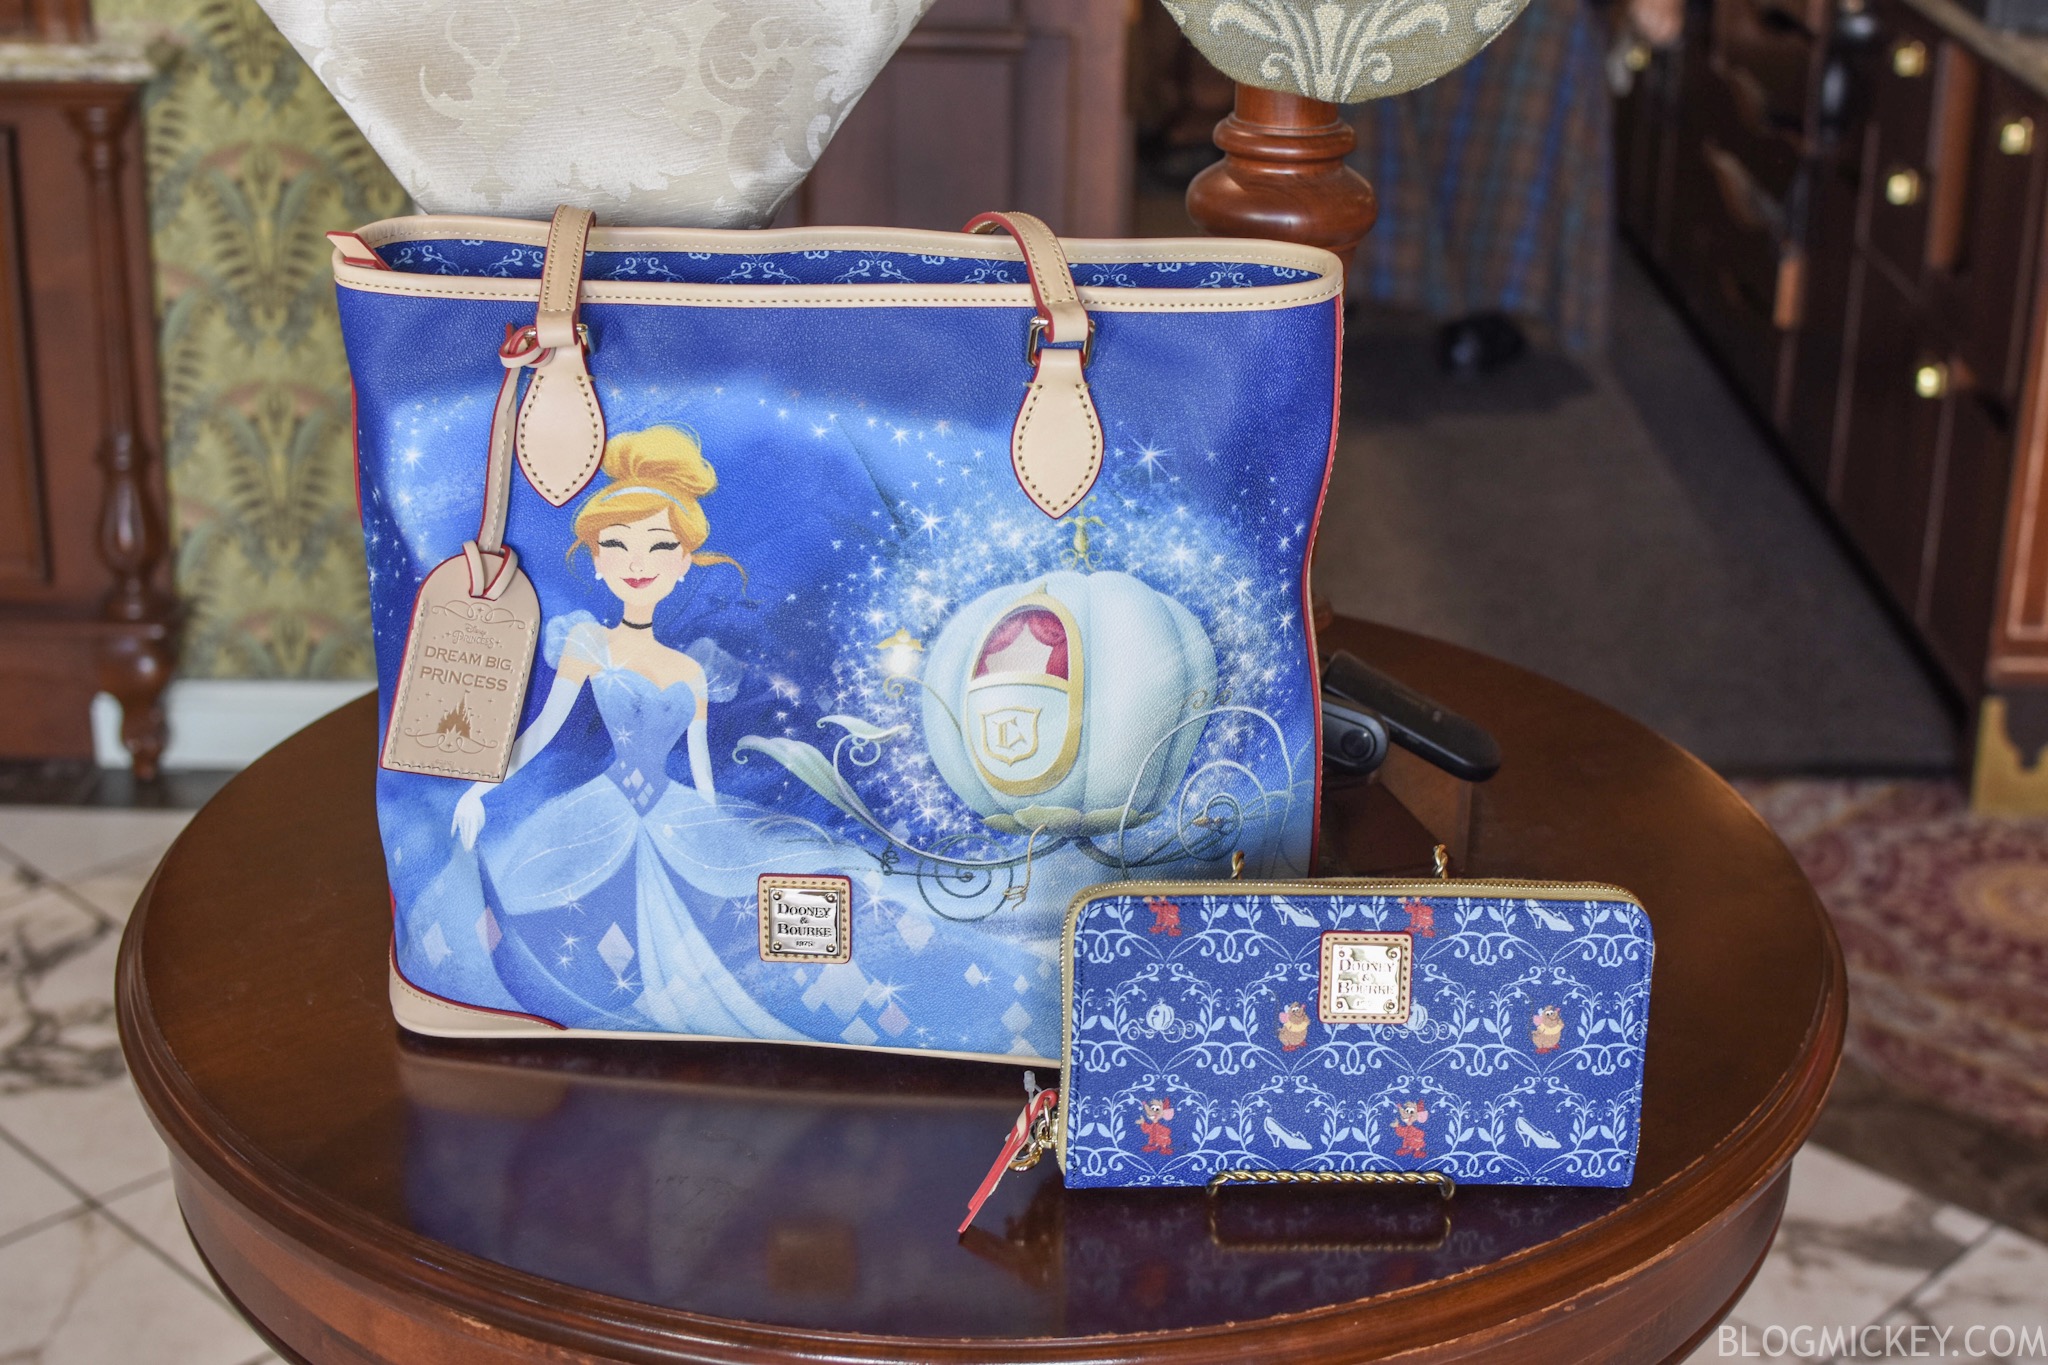 NEW Cinderella Dooney & Bourke Handbags Arrive at Walt